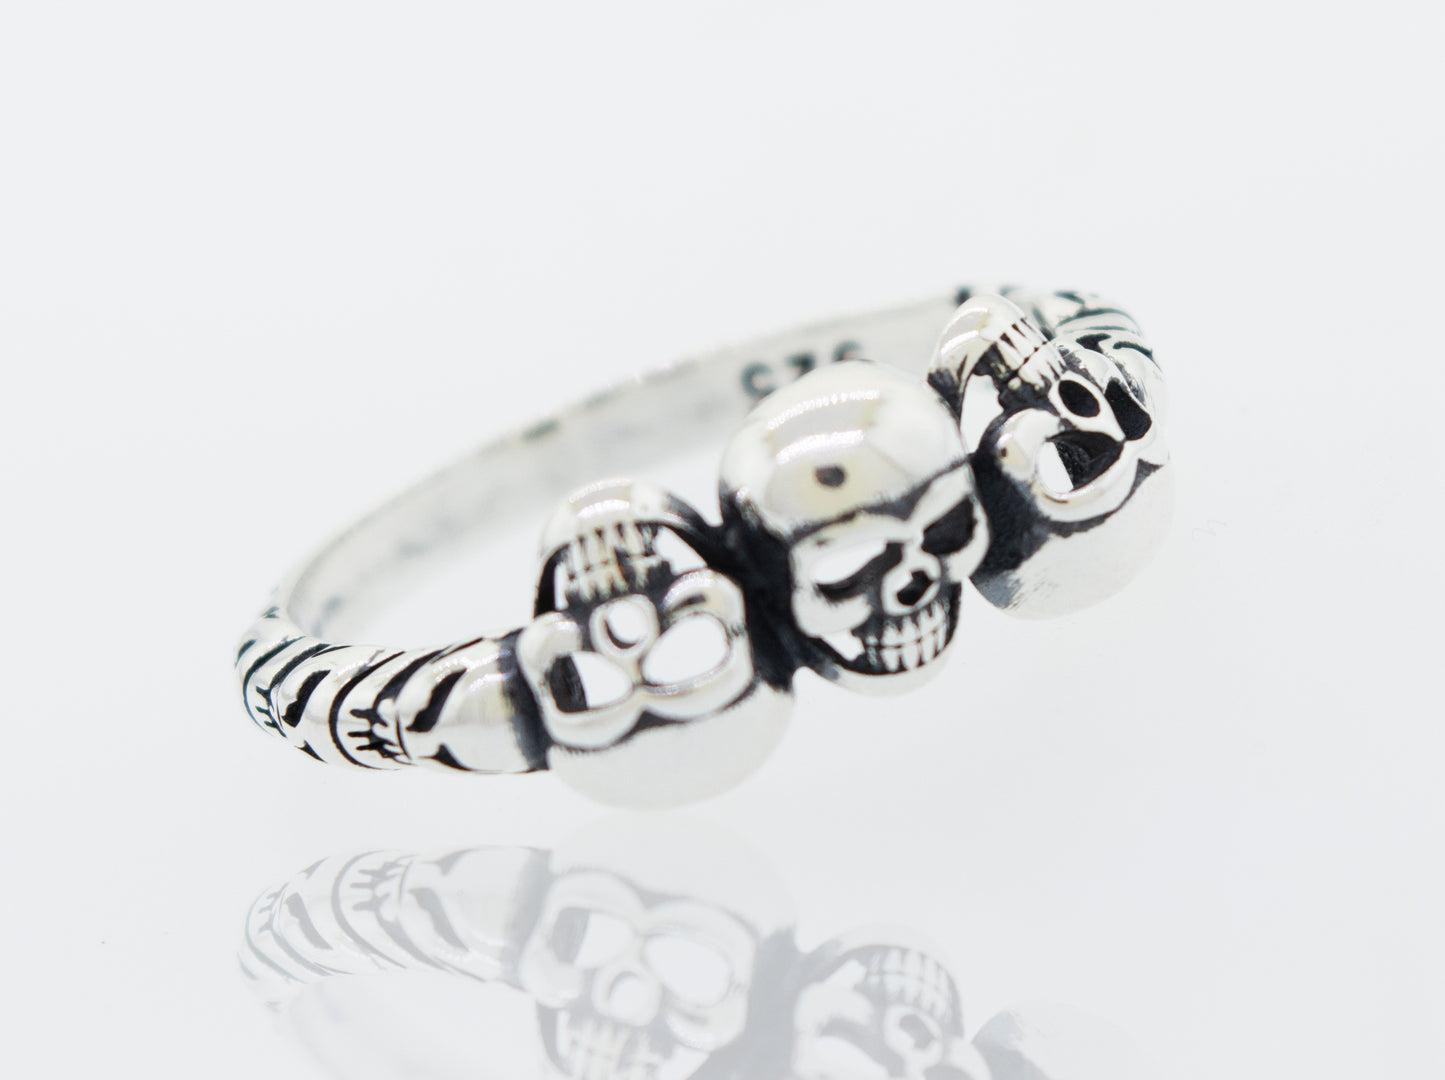 A Three Skulls Ring, ideal for men.